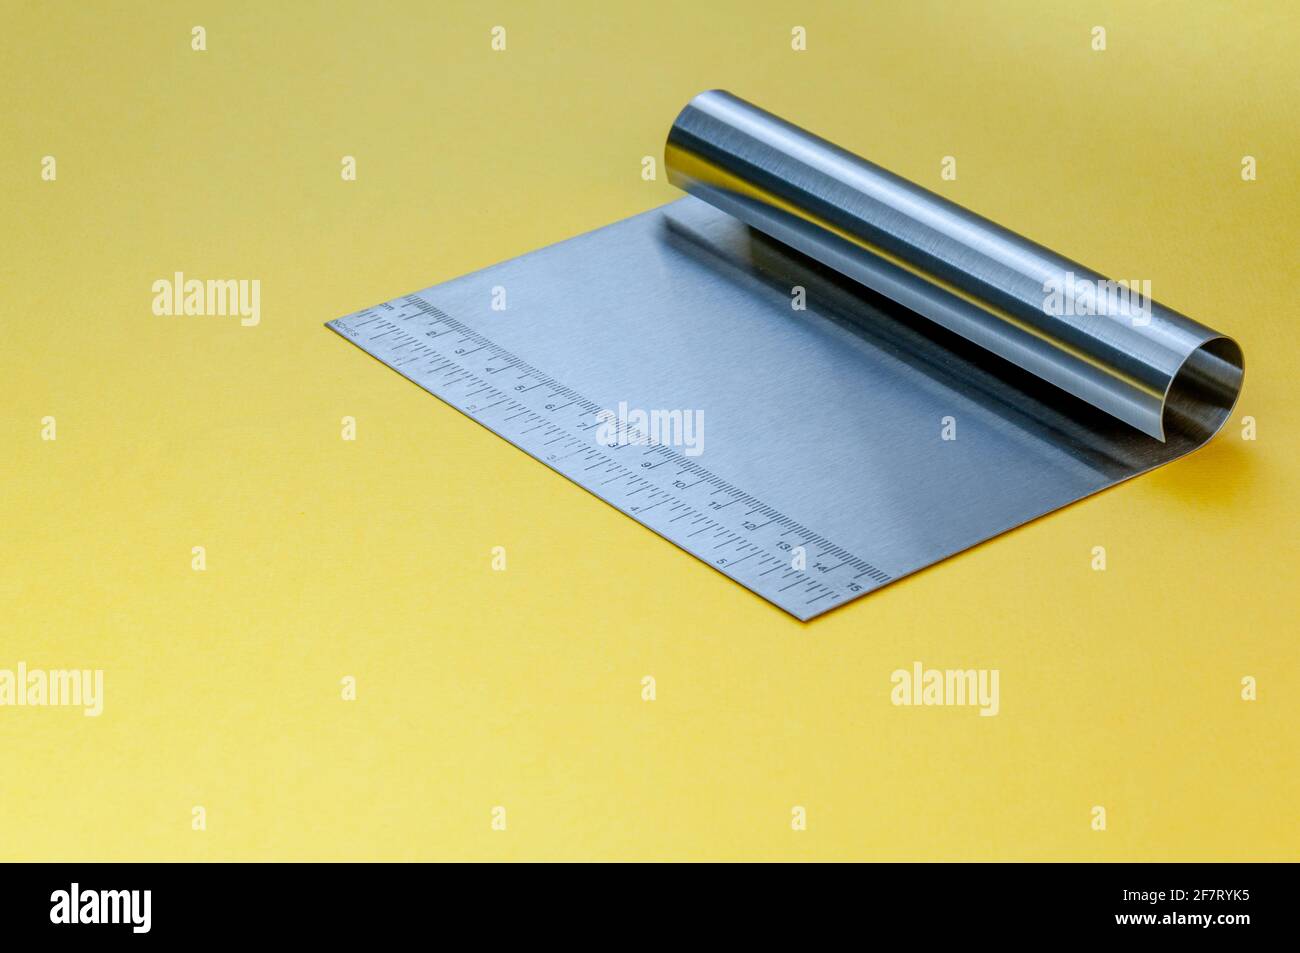 Metall-Teig Schaber Messer über hellgelben Oberfläche Hintergrund. Flacher Teigschaber aus Edelstahl mit Linealskala. Stockfoto